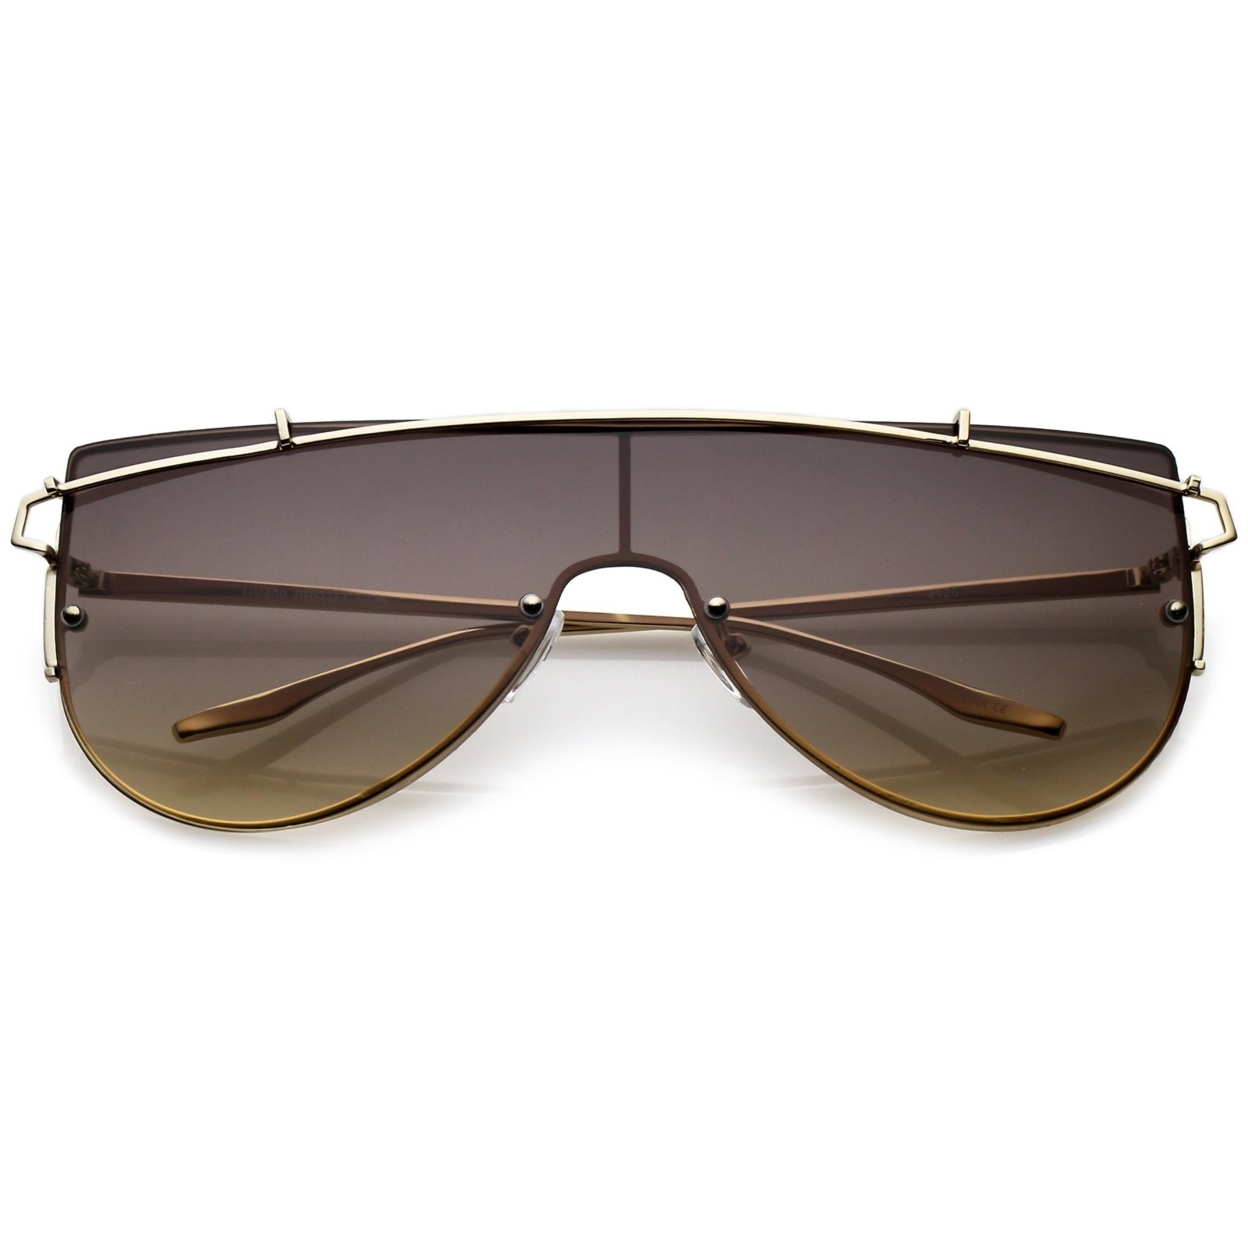 Futuristic Rimless Metal Crossbar Nuetral Colored Mono Lens Shield Sunglasses 64mm - Silver / Lavender